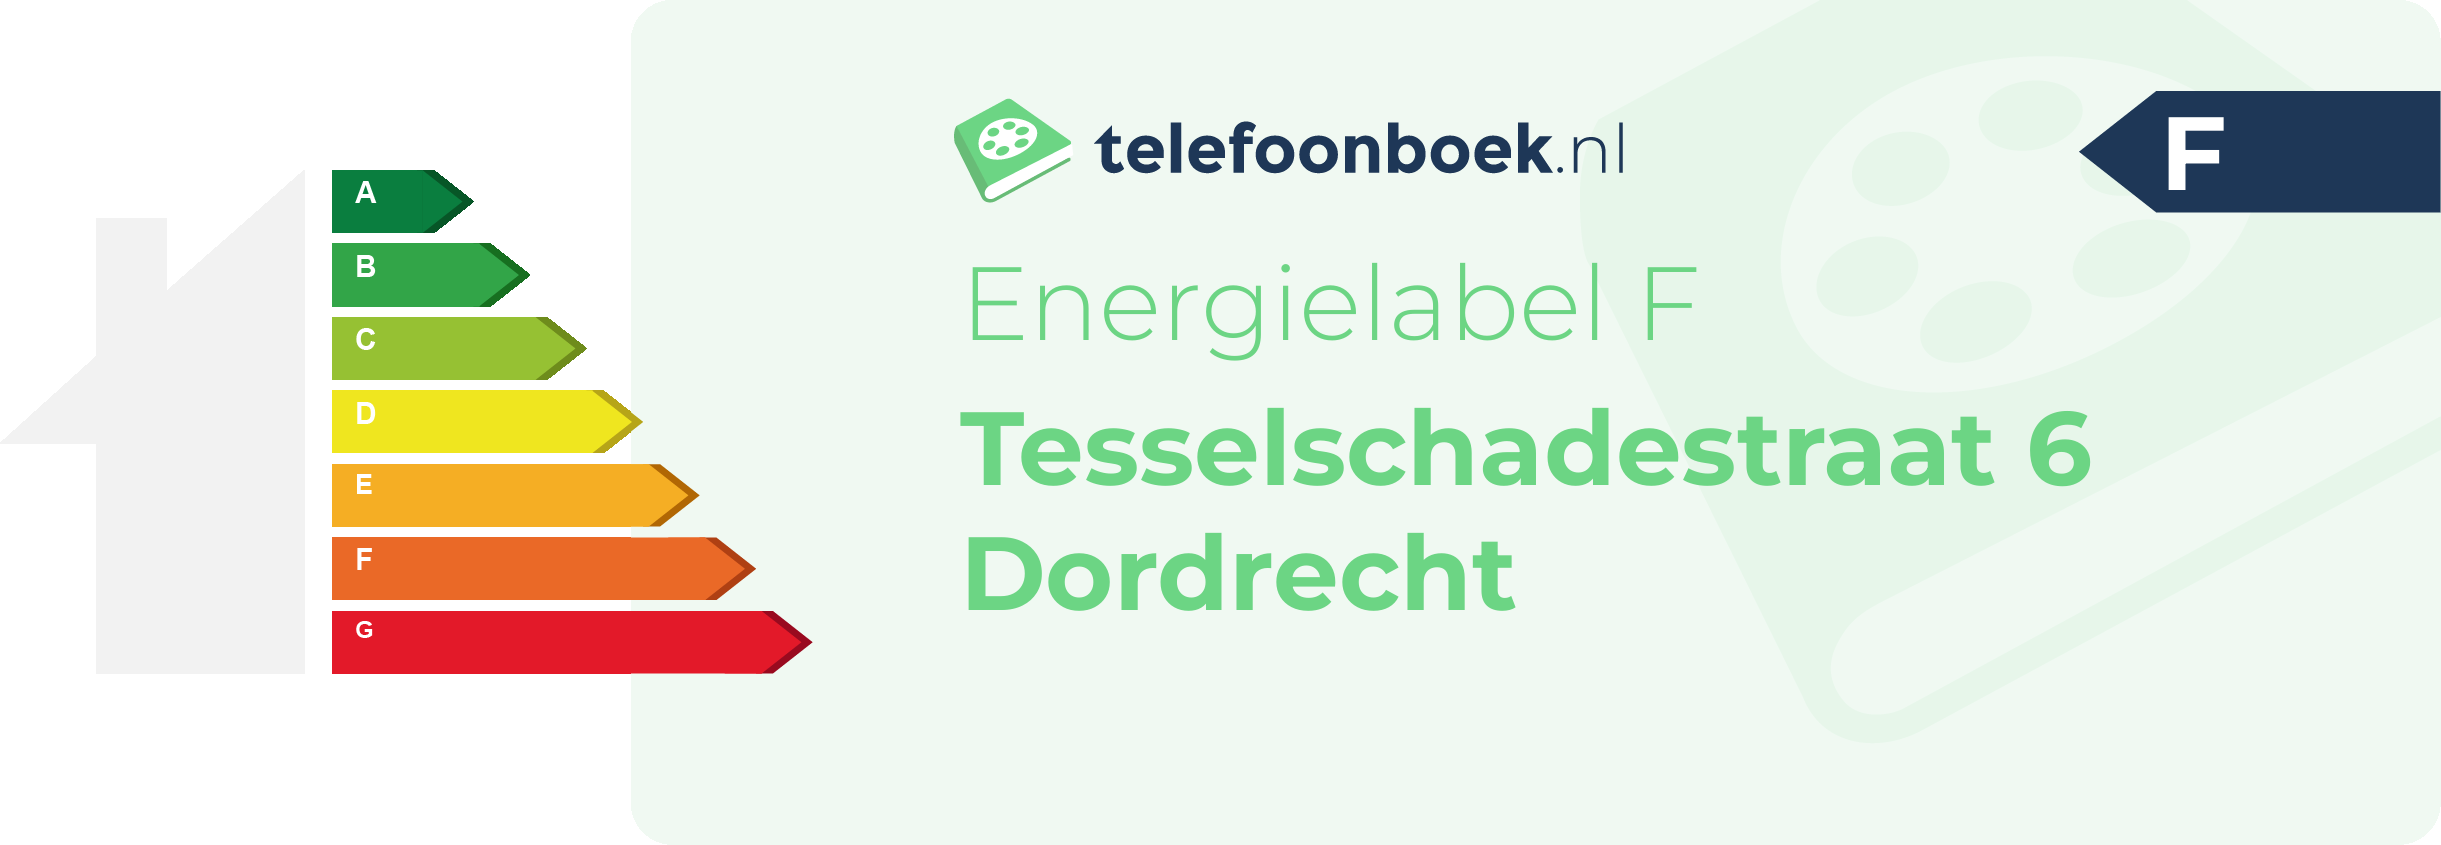 Energielabel Tesselschadestraat 6 Dordrecht